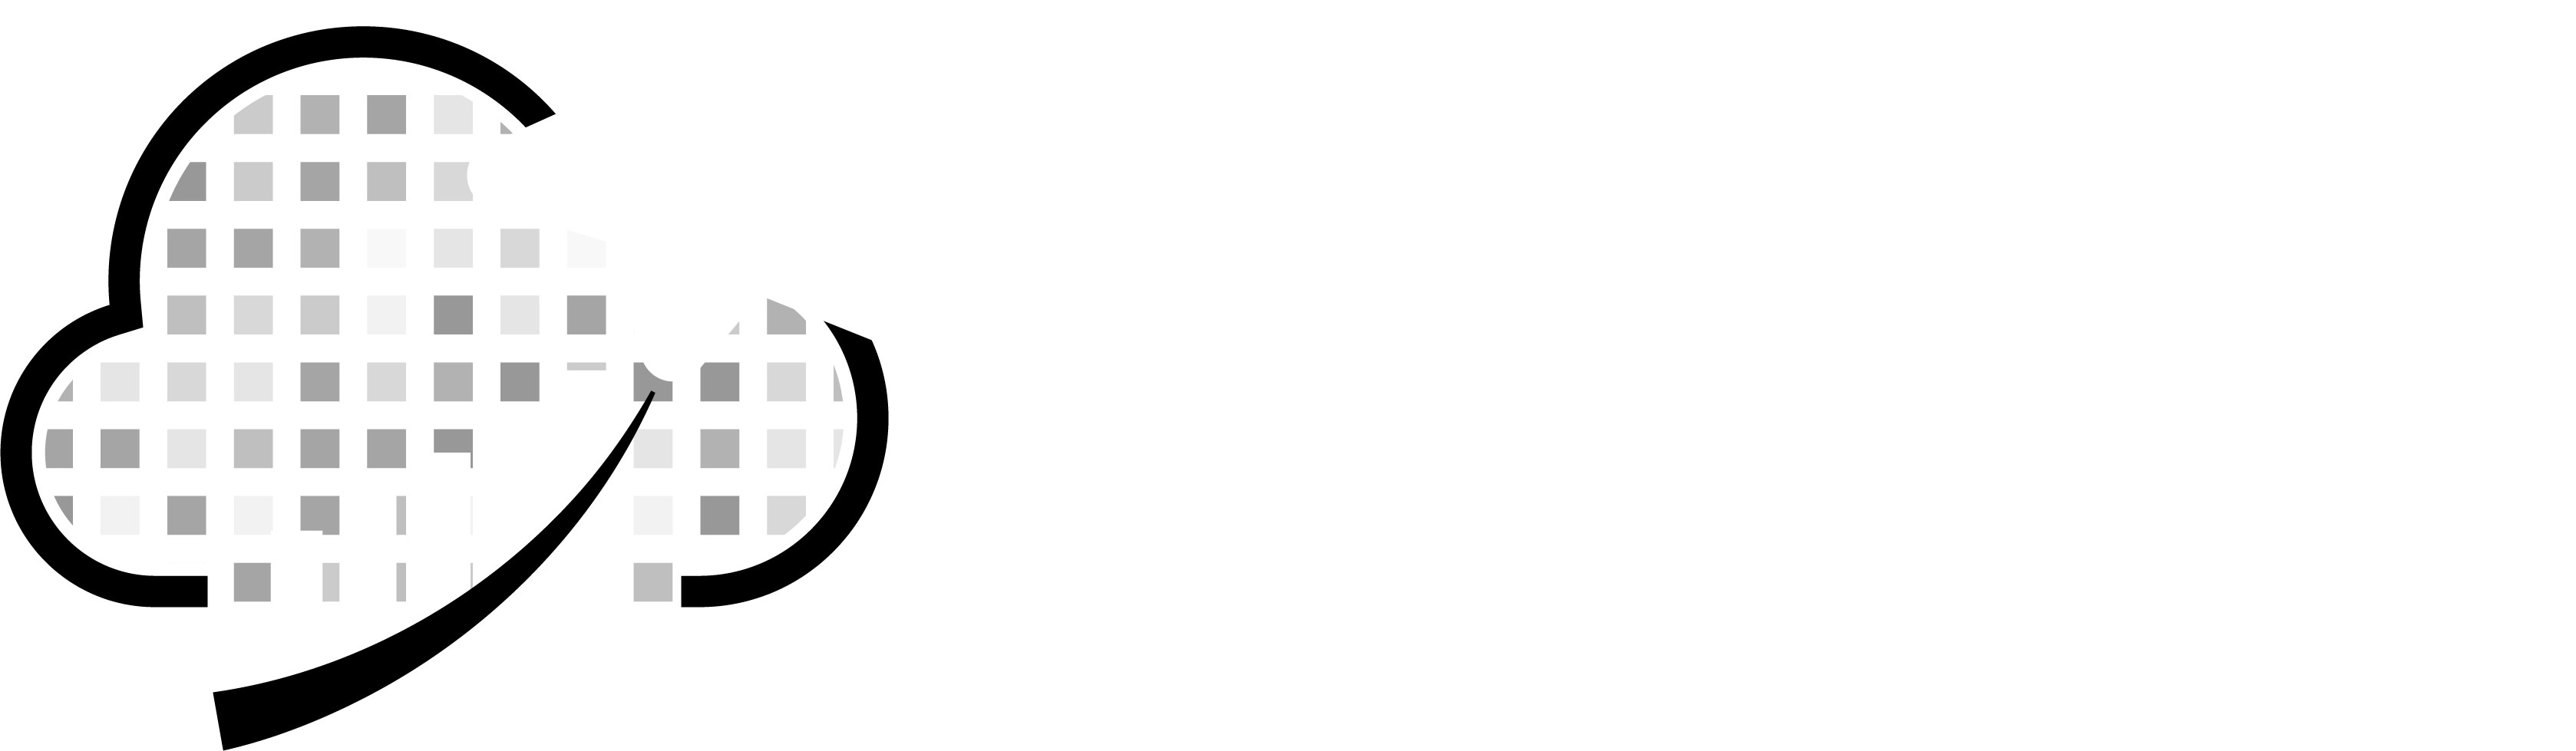 Mastek Glide